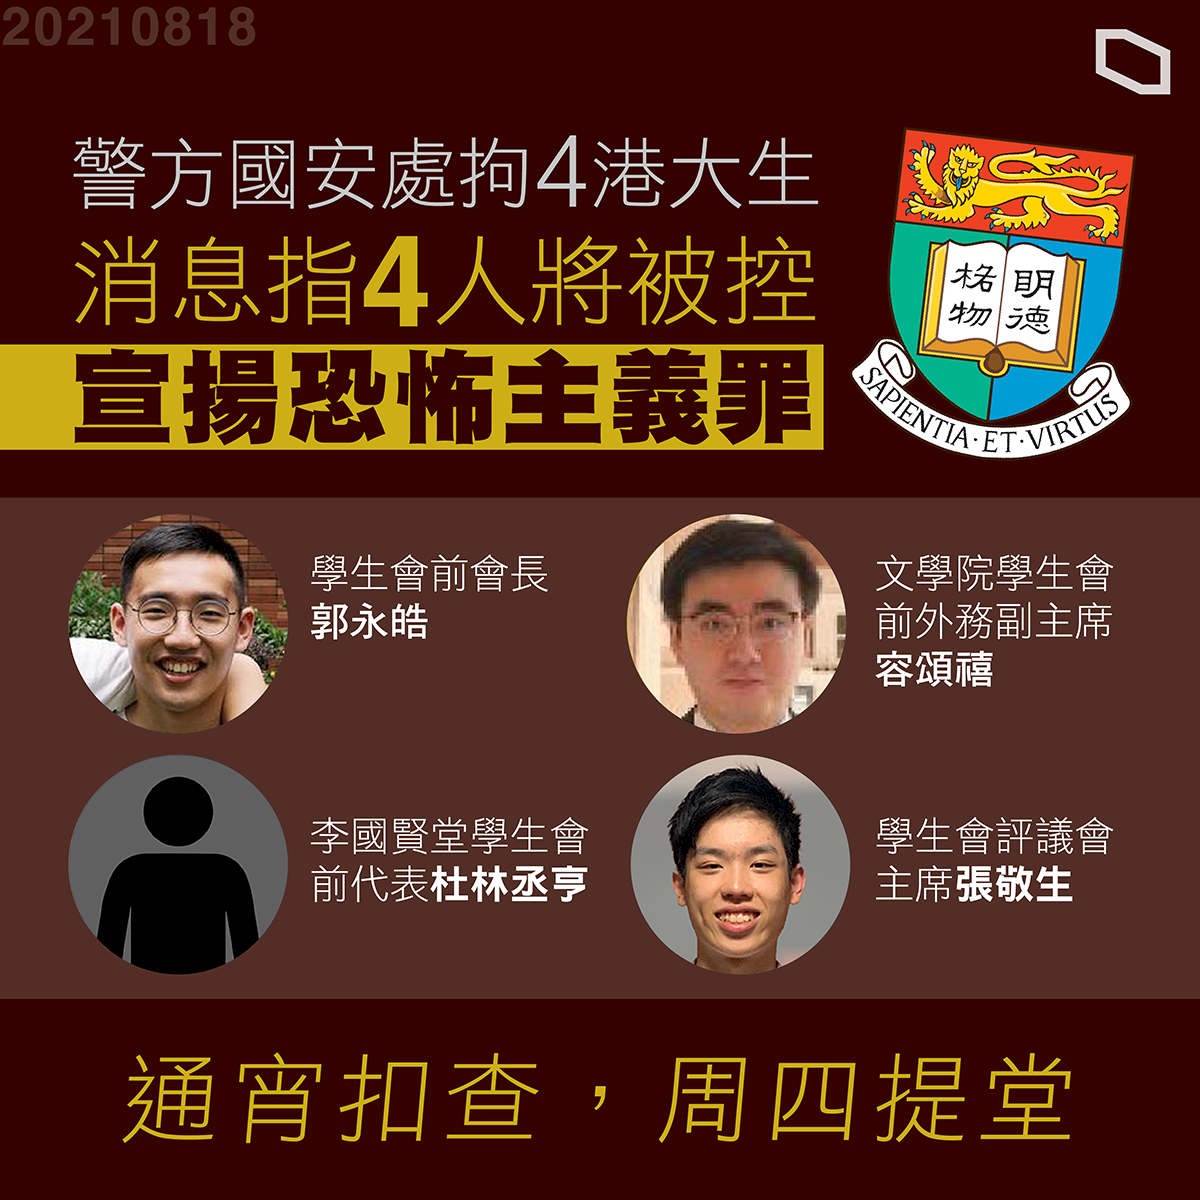 台學聯聲援港大學生會 呼籲台灣盤整港澳條例提供援助